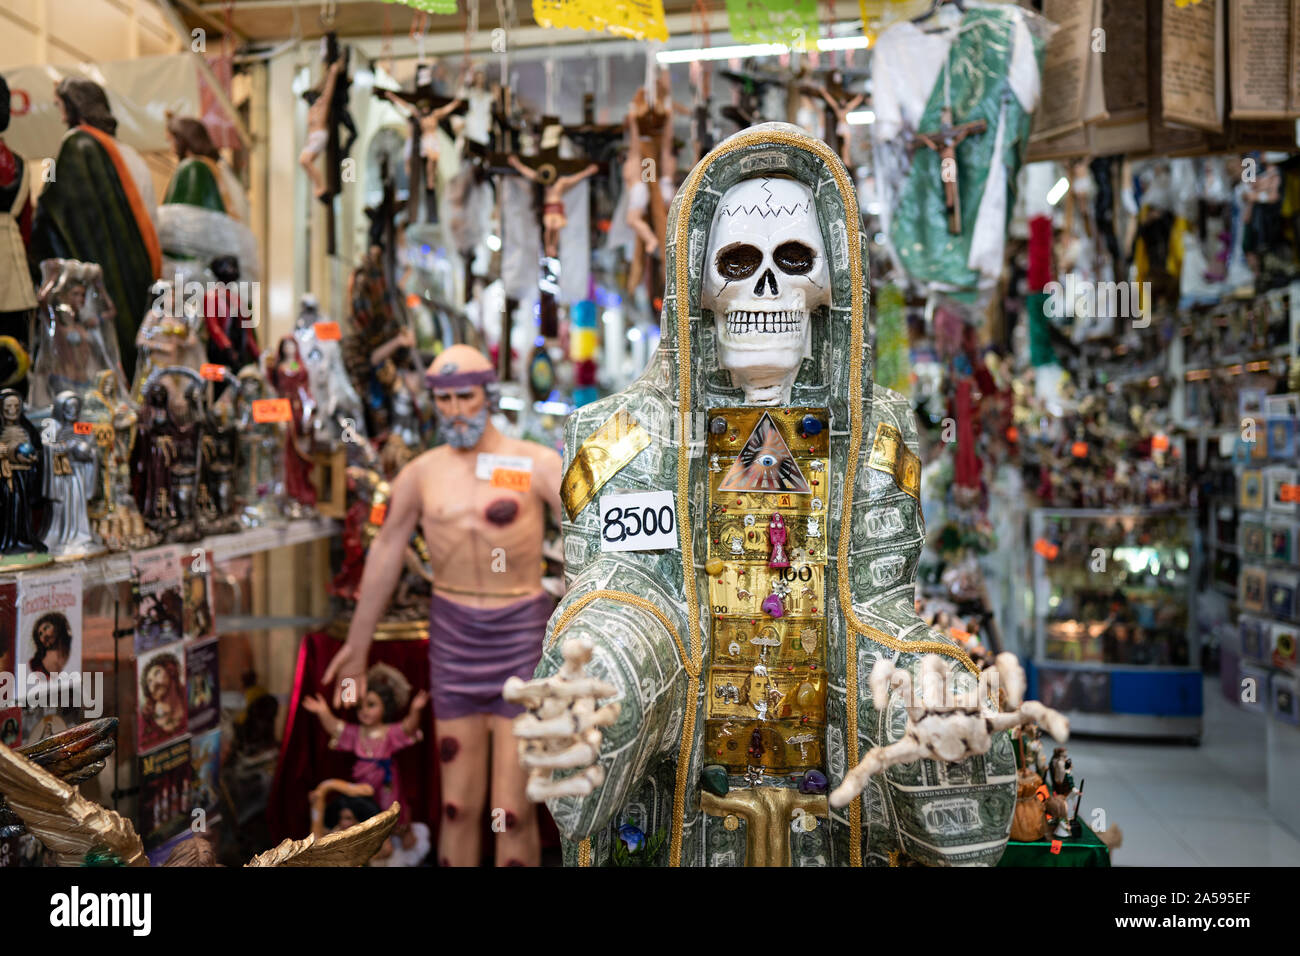 Un squelette est vu avec figurines religieuses dans un magasin à la Merced marqués dans le centre de Mexico. Banque D'Images